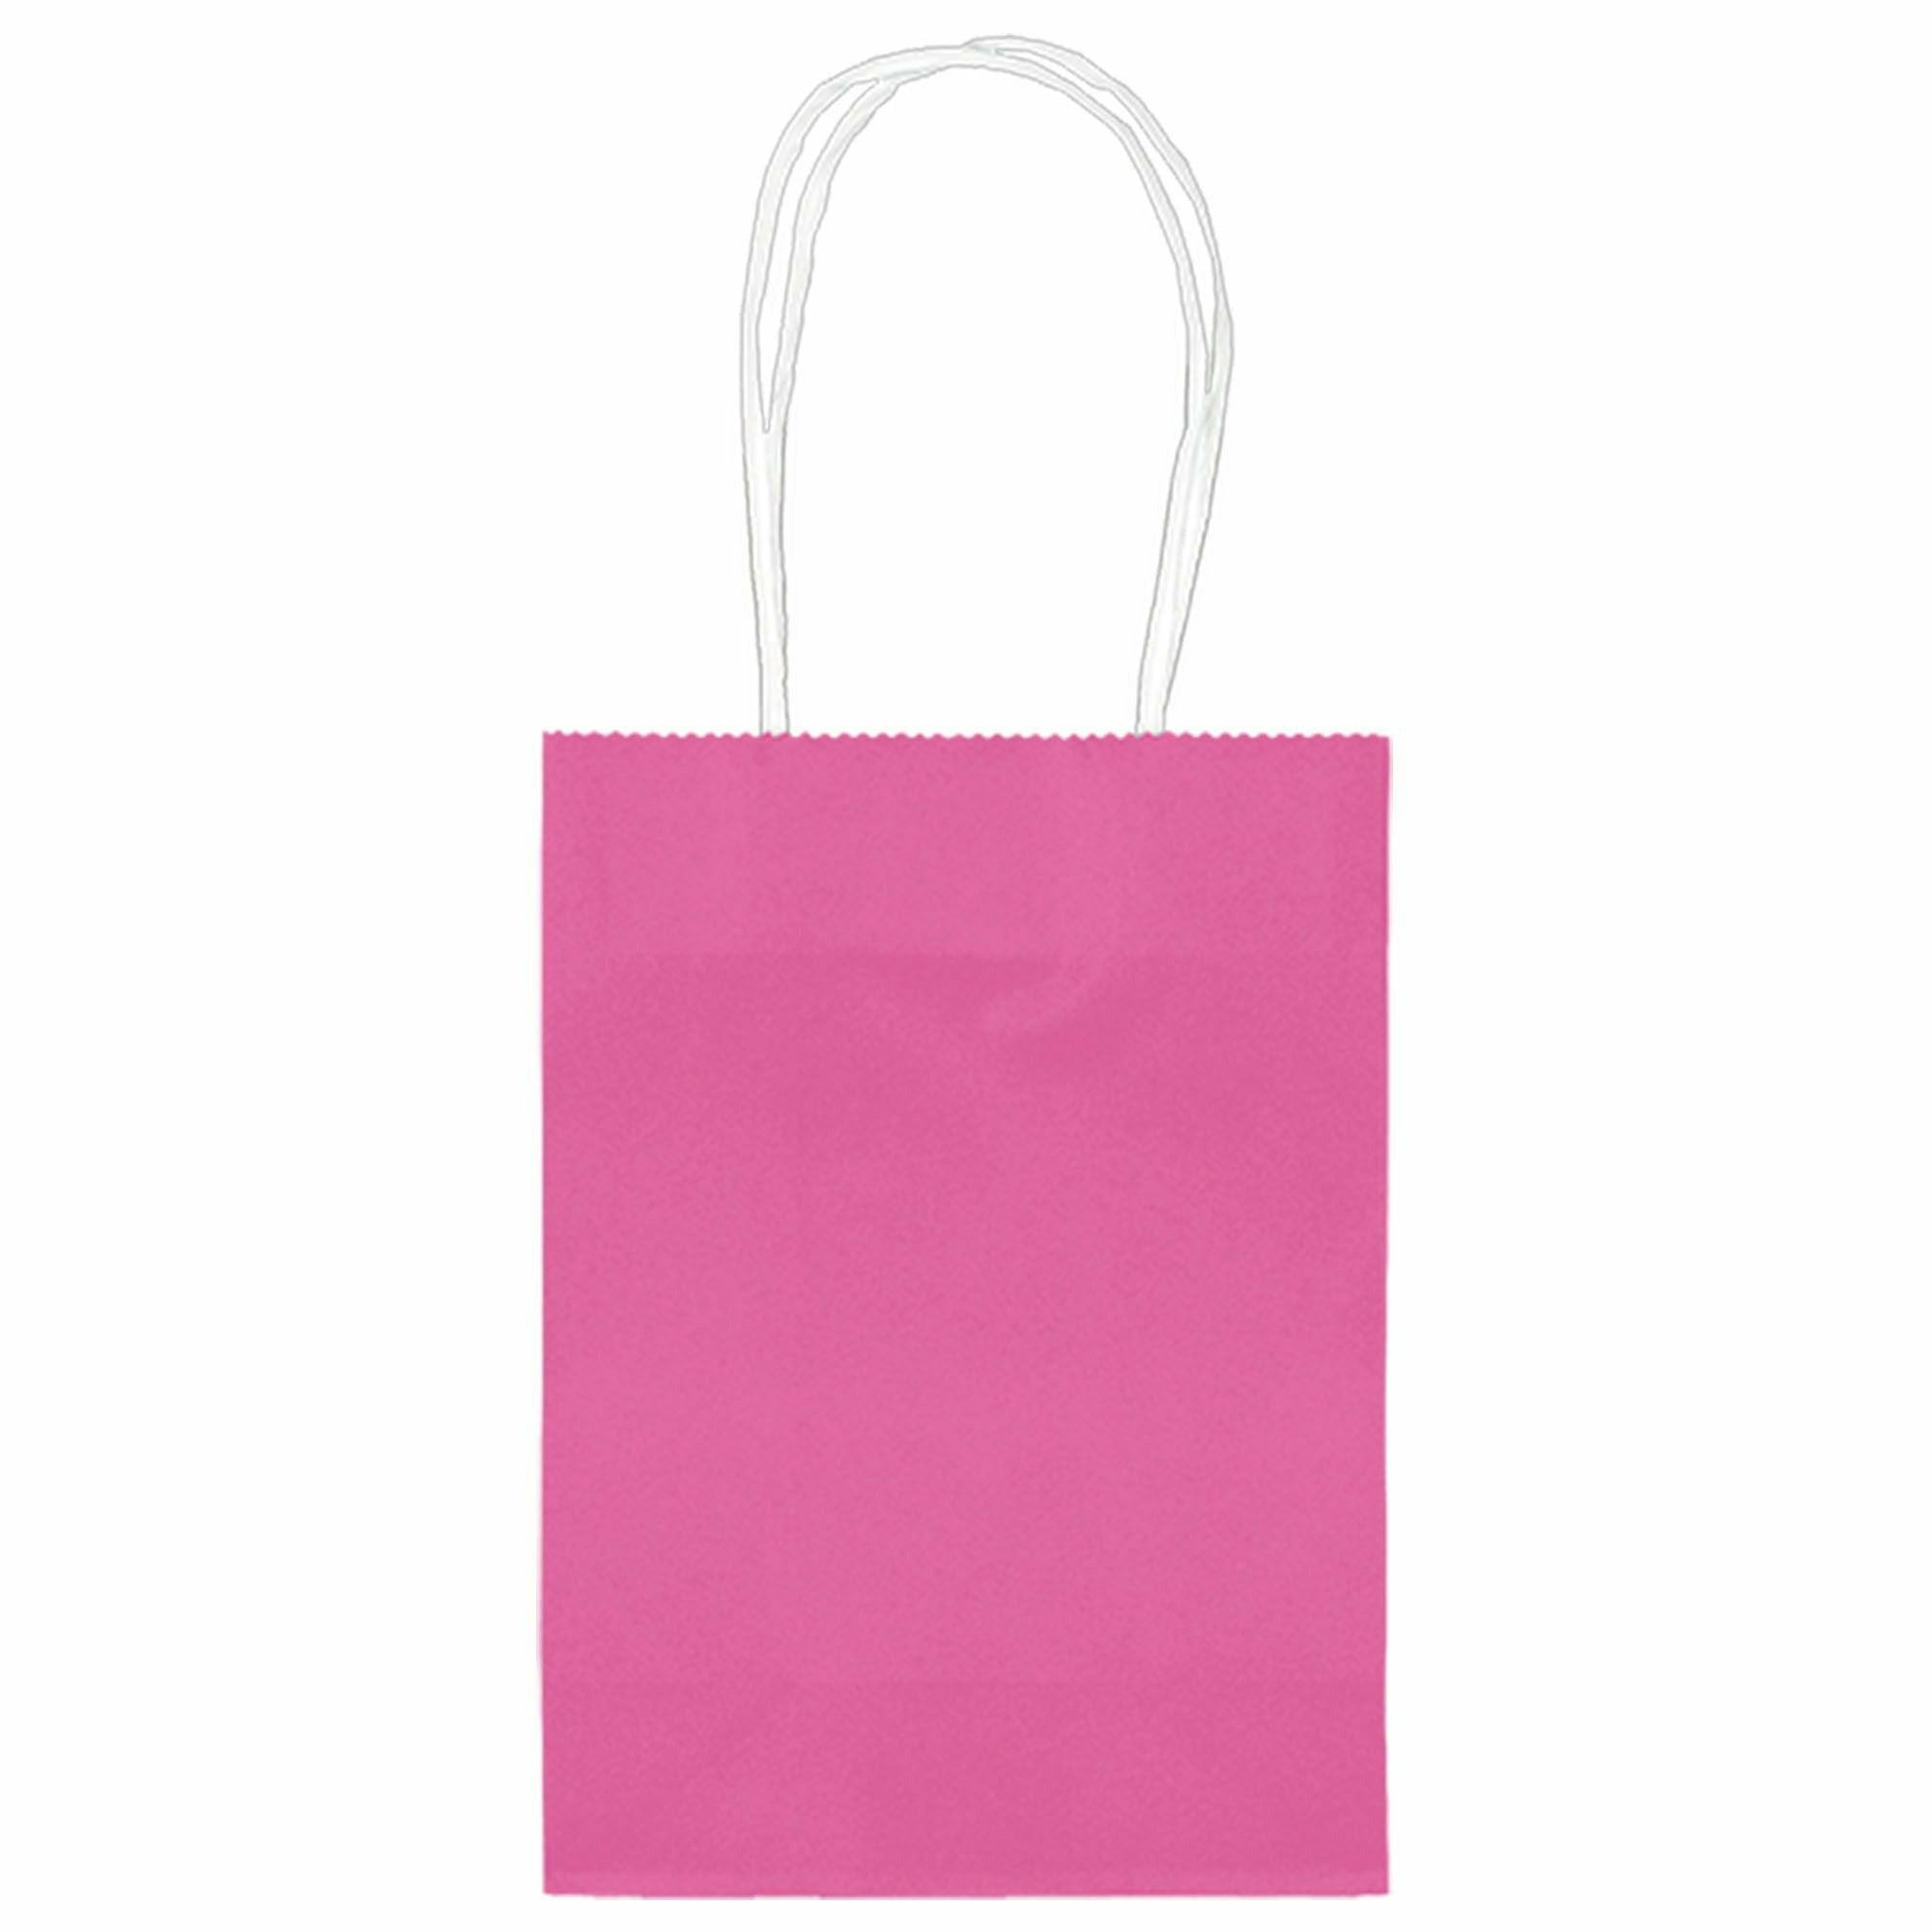 Amscan GIFT WRAP Kraft Bag - Bright Pink